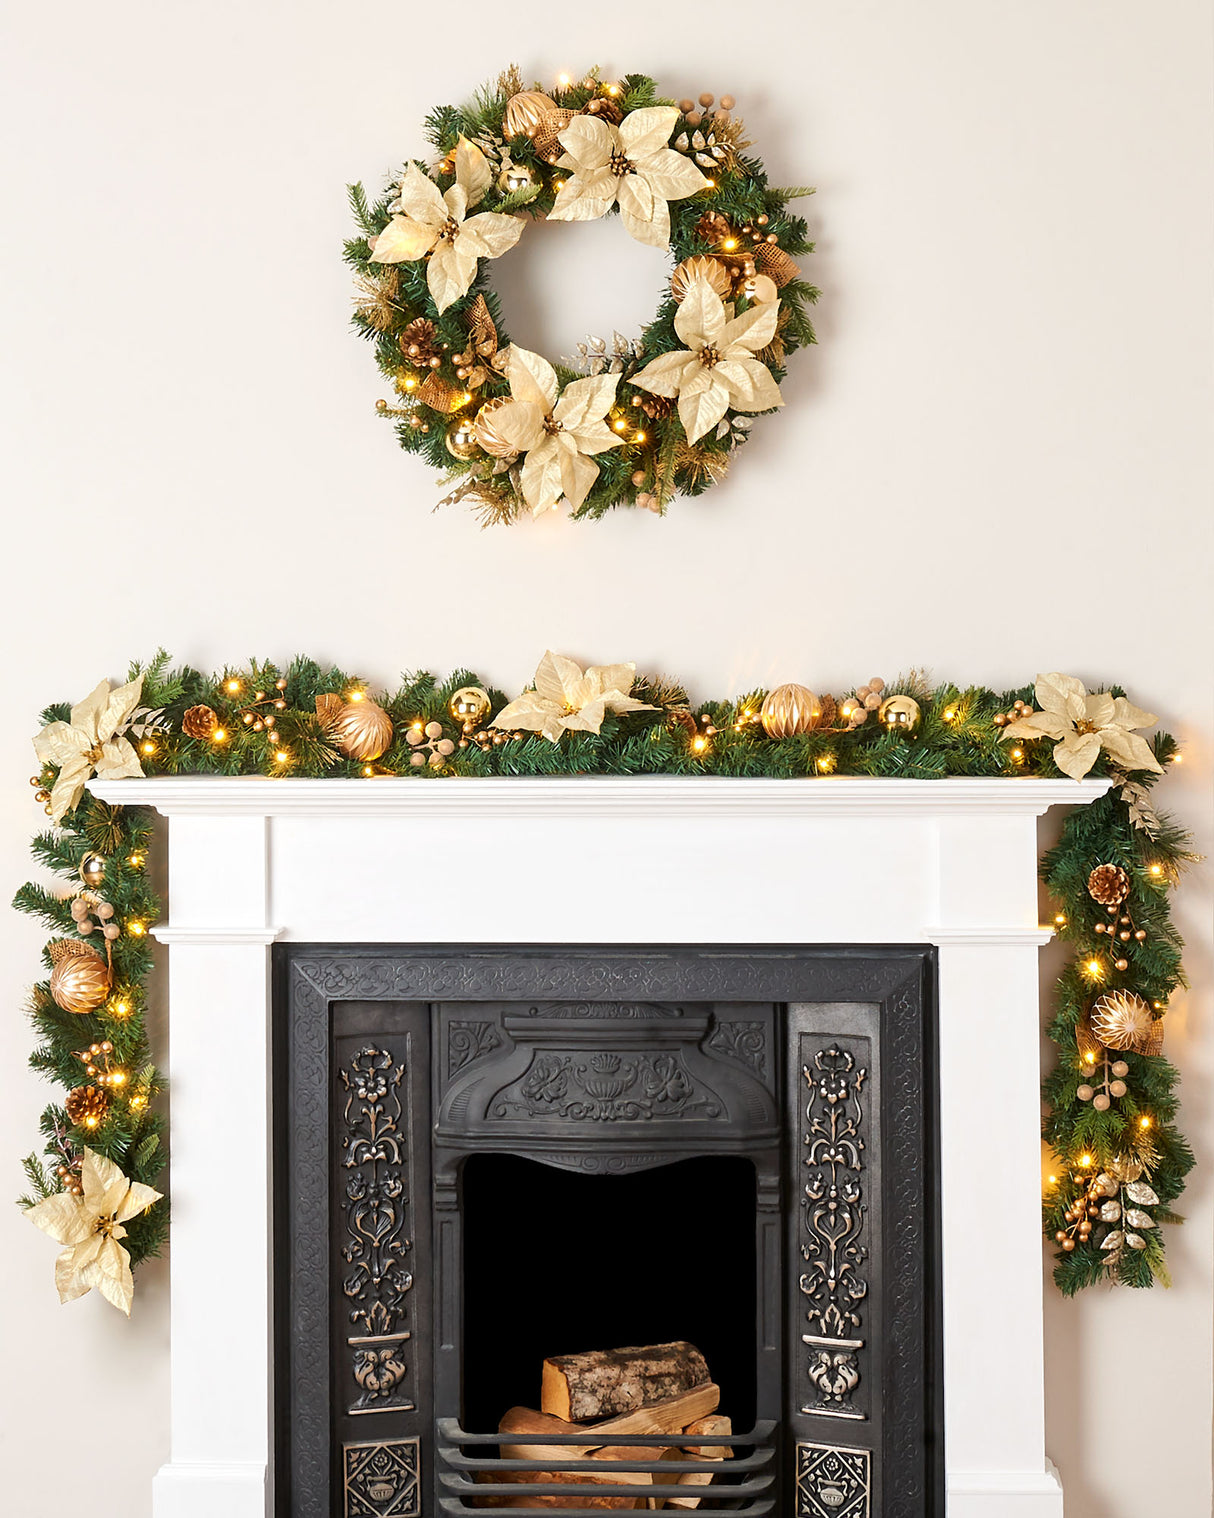 Pre-Lit Decorated Wreath, Cream/Gold, 60 cm